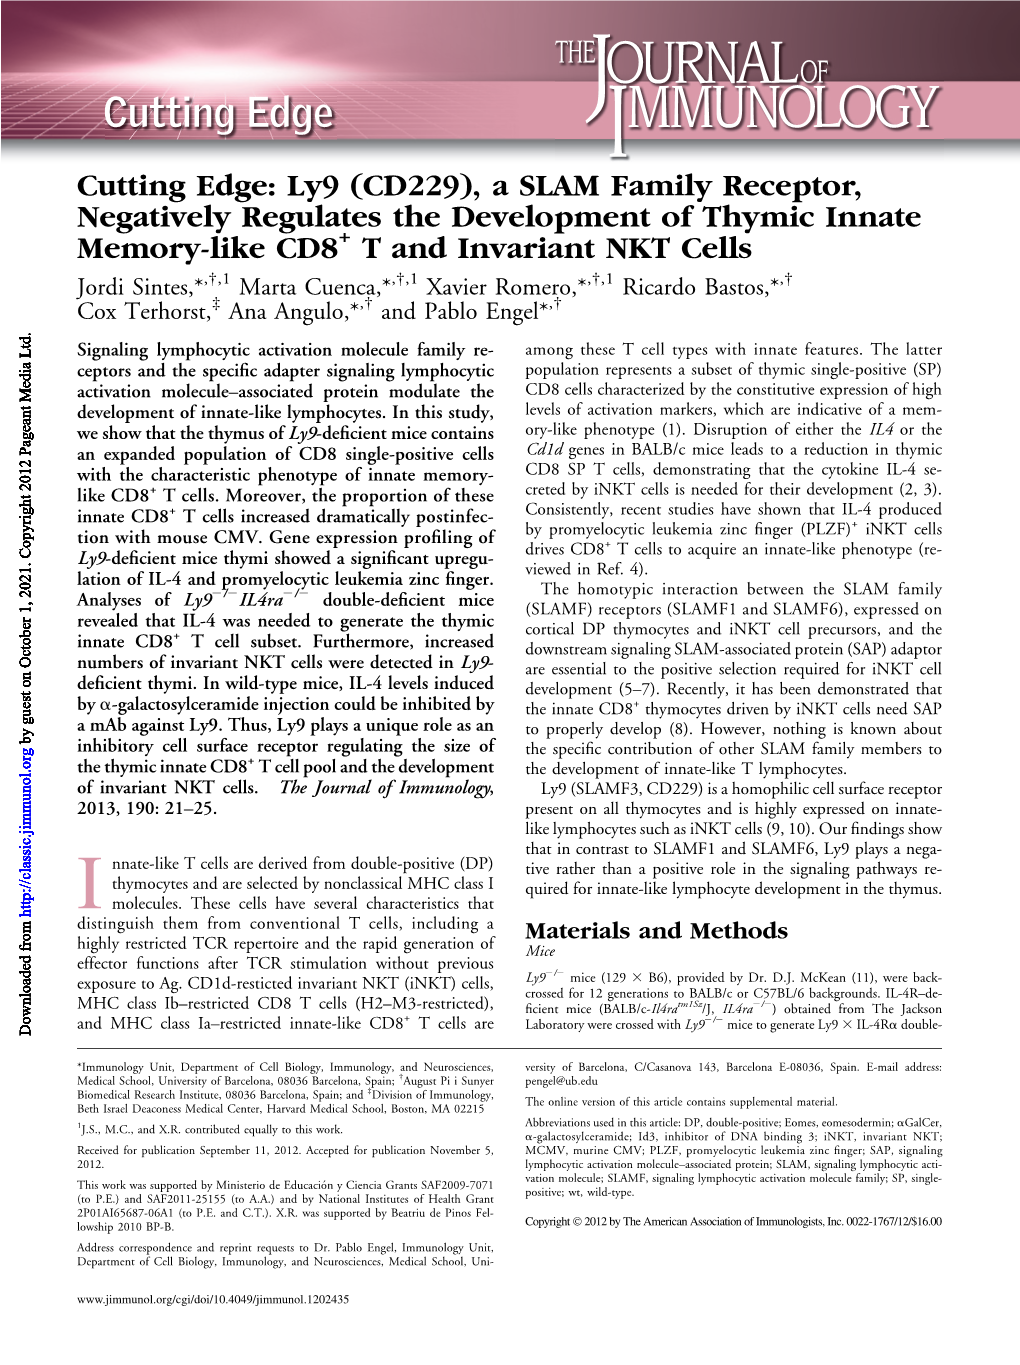 T and Invariant NKT Cells + CD8 Development of Thymic Innate